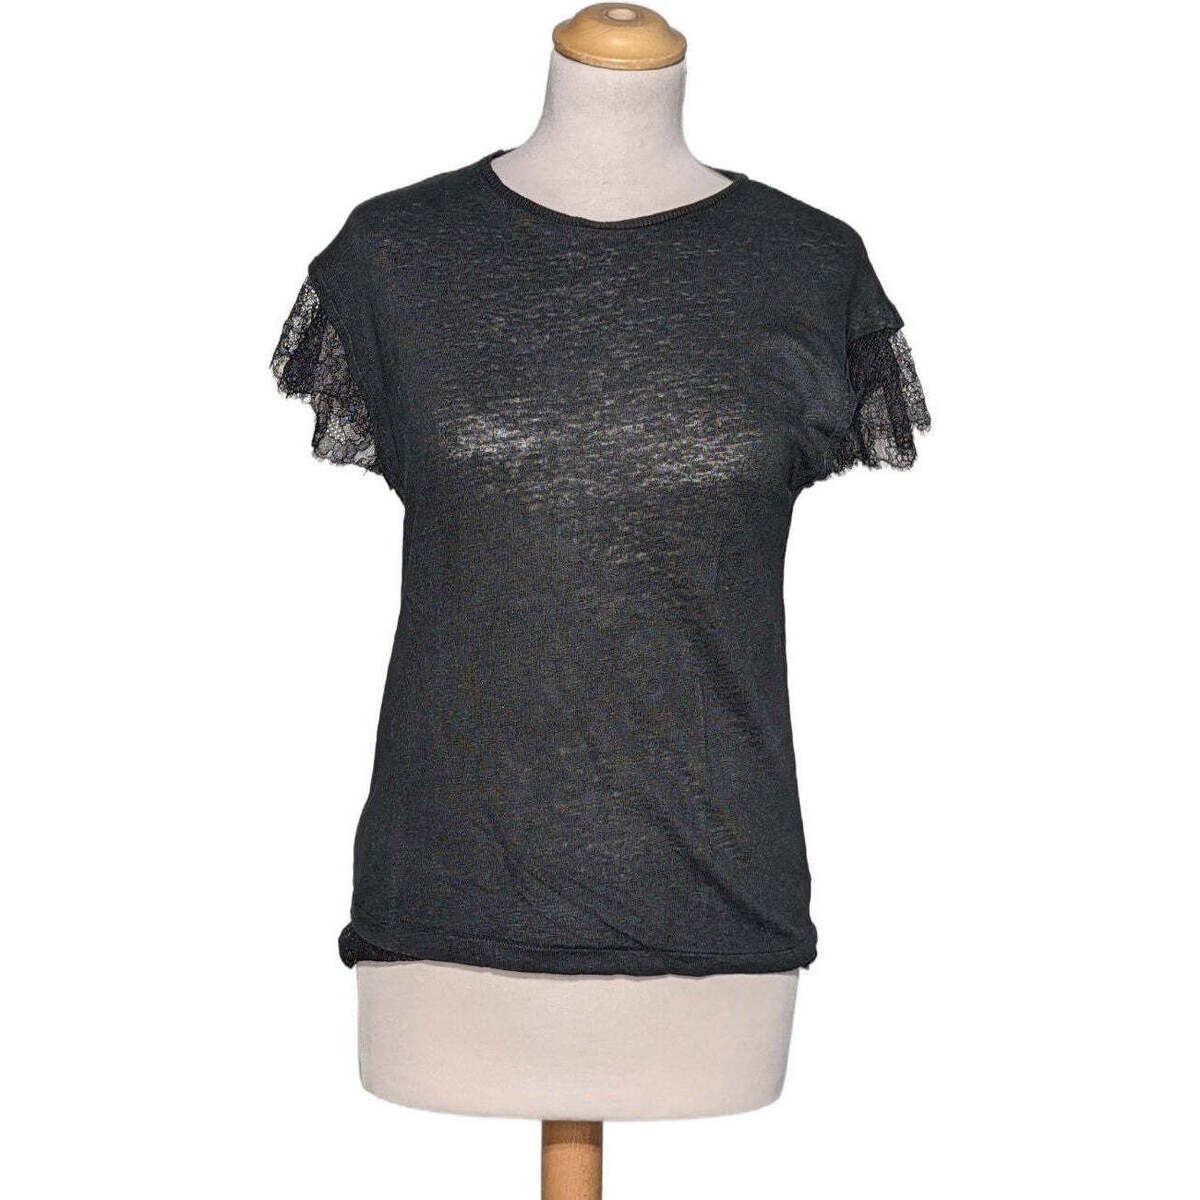 Vêtements Femme T shirt manches longues 9mois 71cm top manches courtes  36 - T1 - S Noir Noir